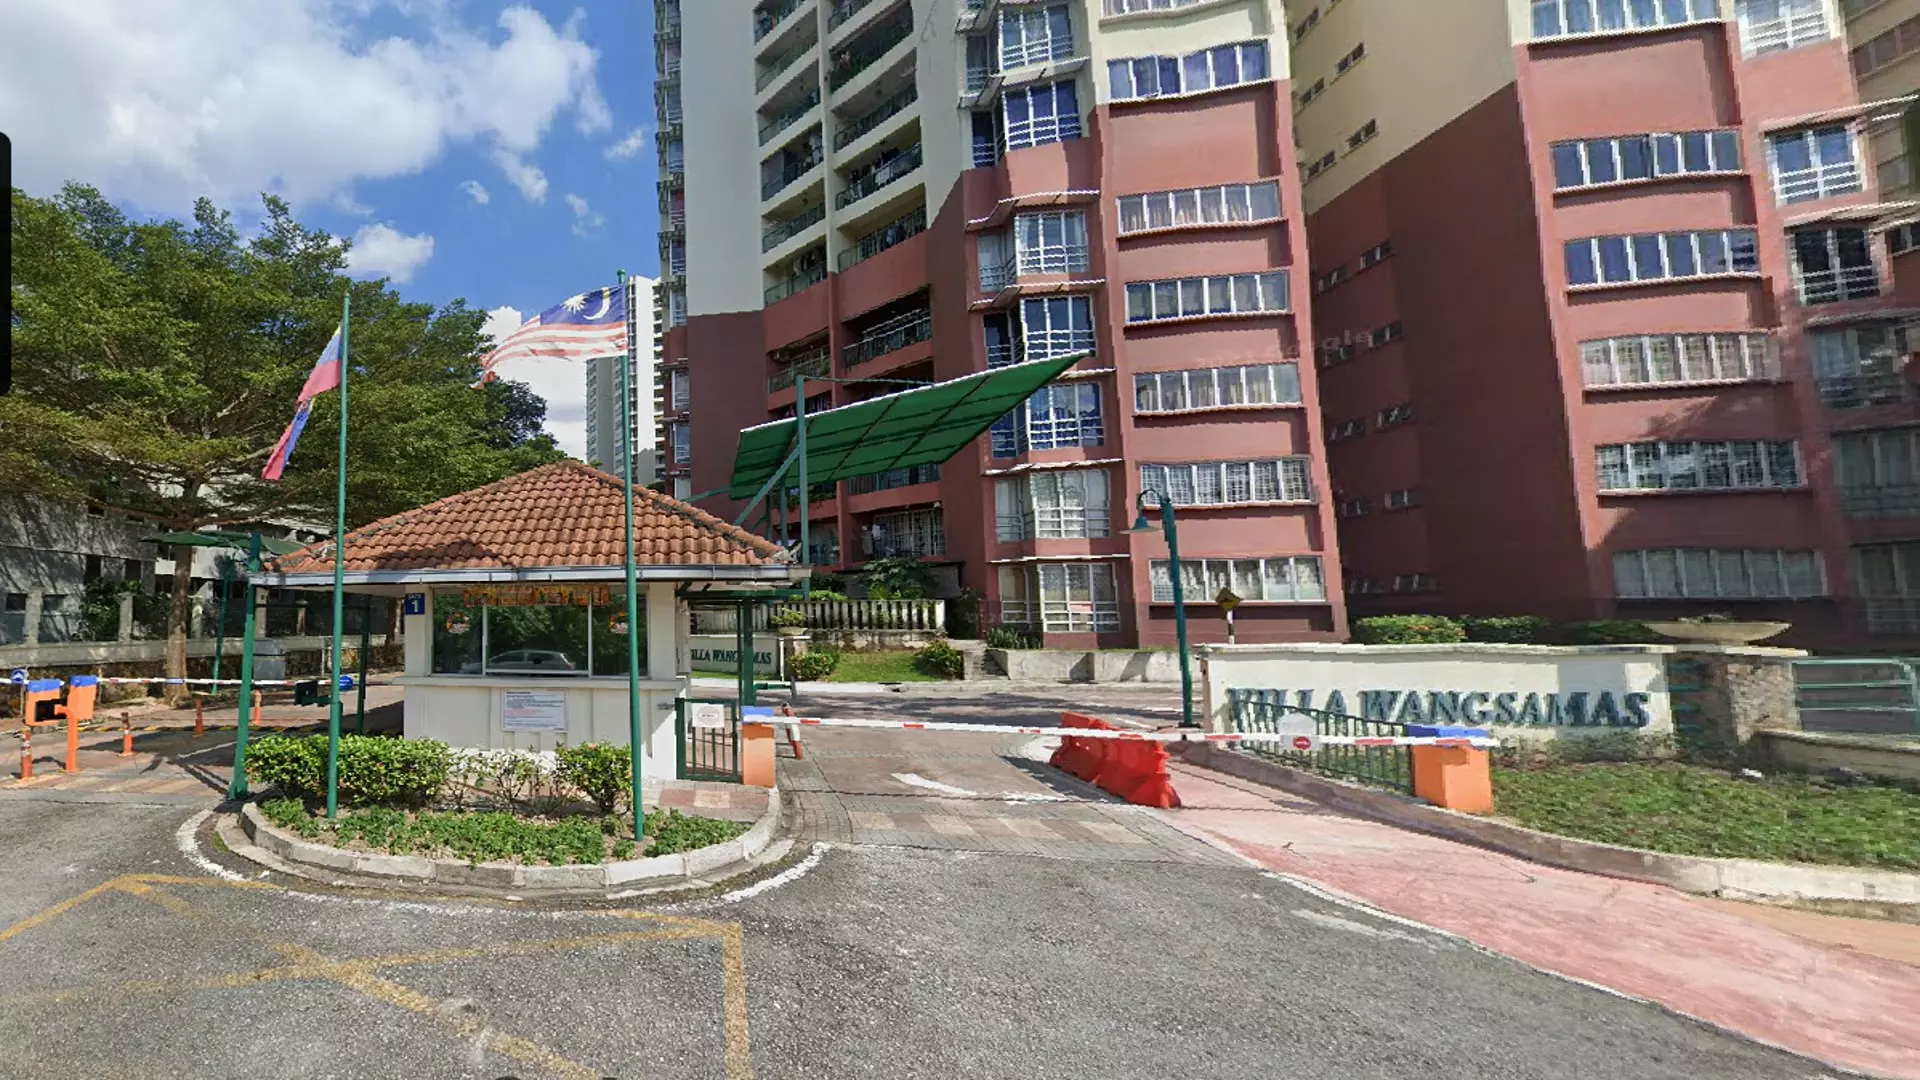 Condominium @ Villa Wangsamas, Wangsa Maju, Kuala Lumpur for Auction